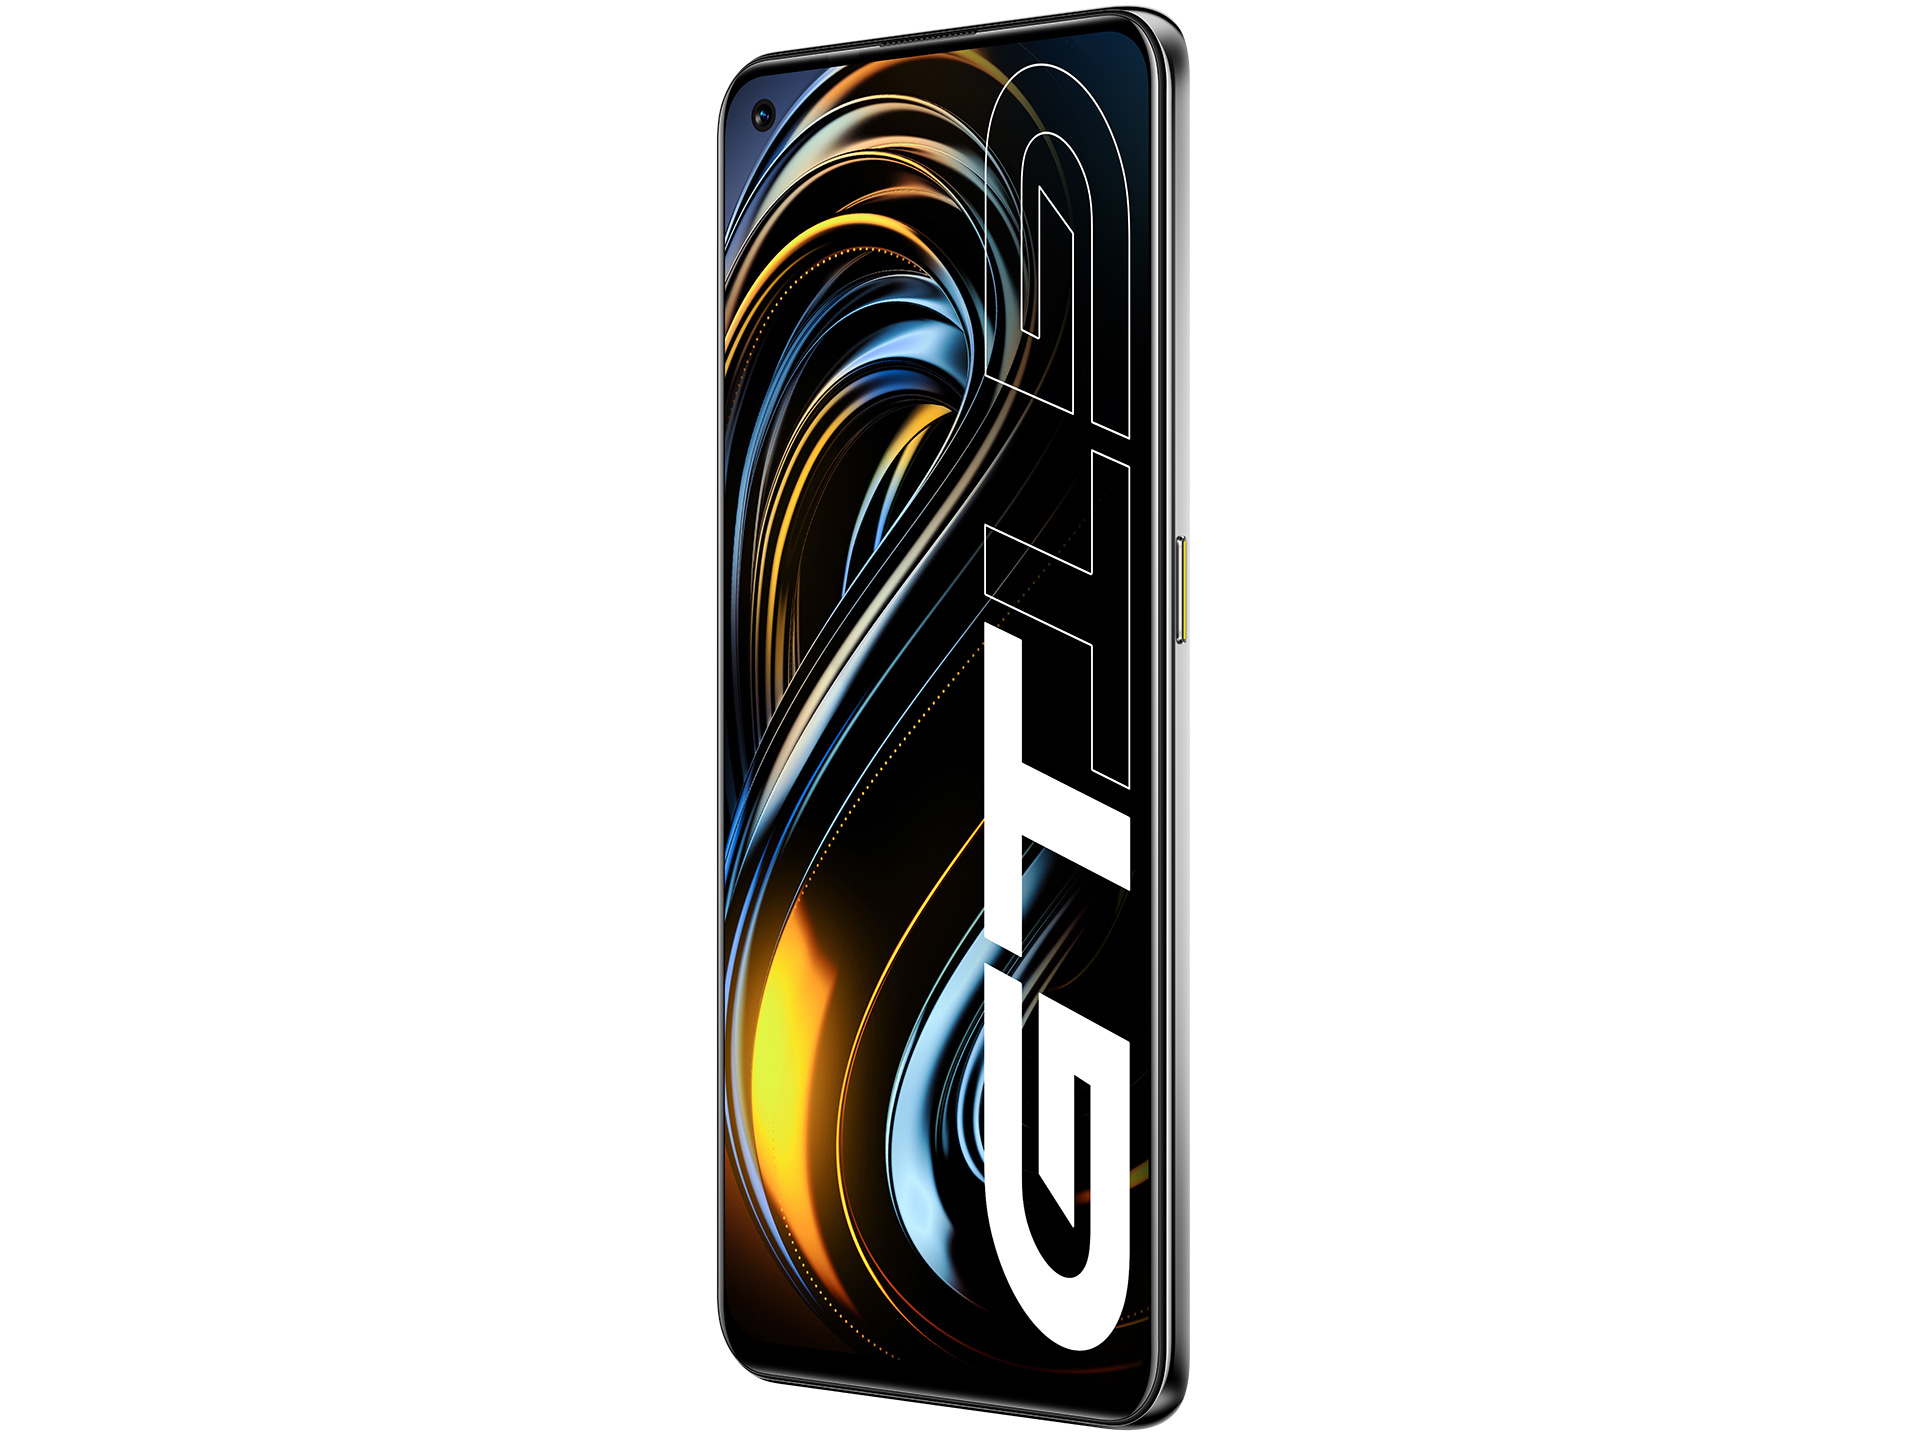 Realme GT Series là một bộ sưu tập điện thoại thông minh thú vị và hiện đại. Với những thiết kế đắt giá và tính năng cao cấp, Realme GT Series đang được rất nhiều người quan tâm. Xem ngay hình ảnh về Realme GT Series để khám phá các tính năng độc đáo và các dòng sản phẩm khác nhau.